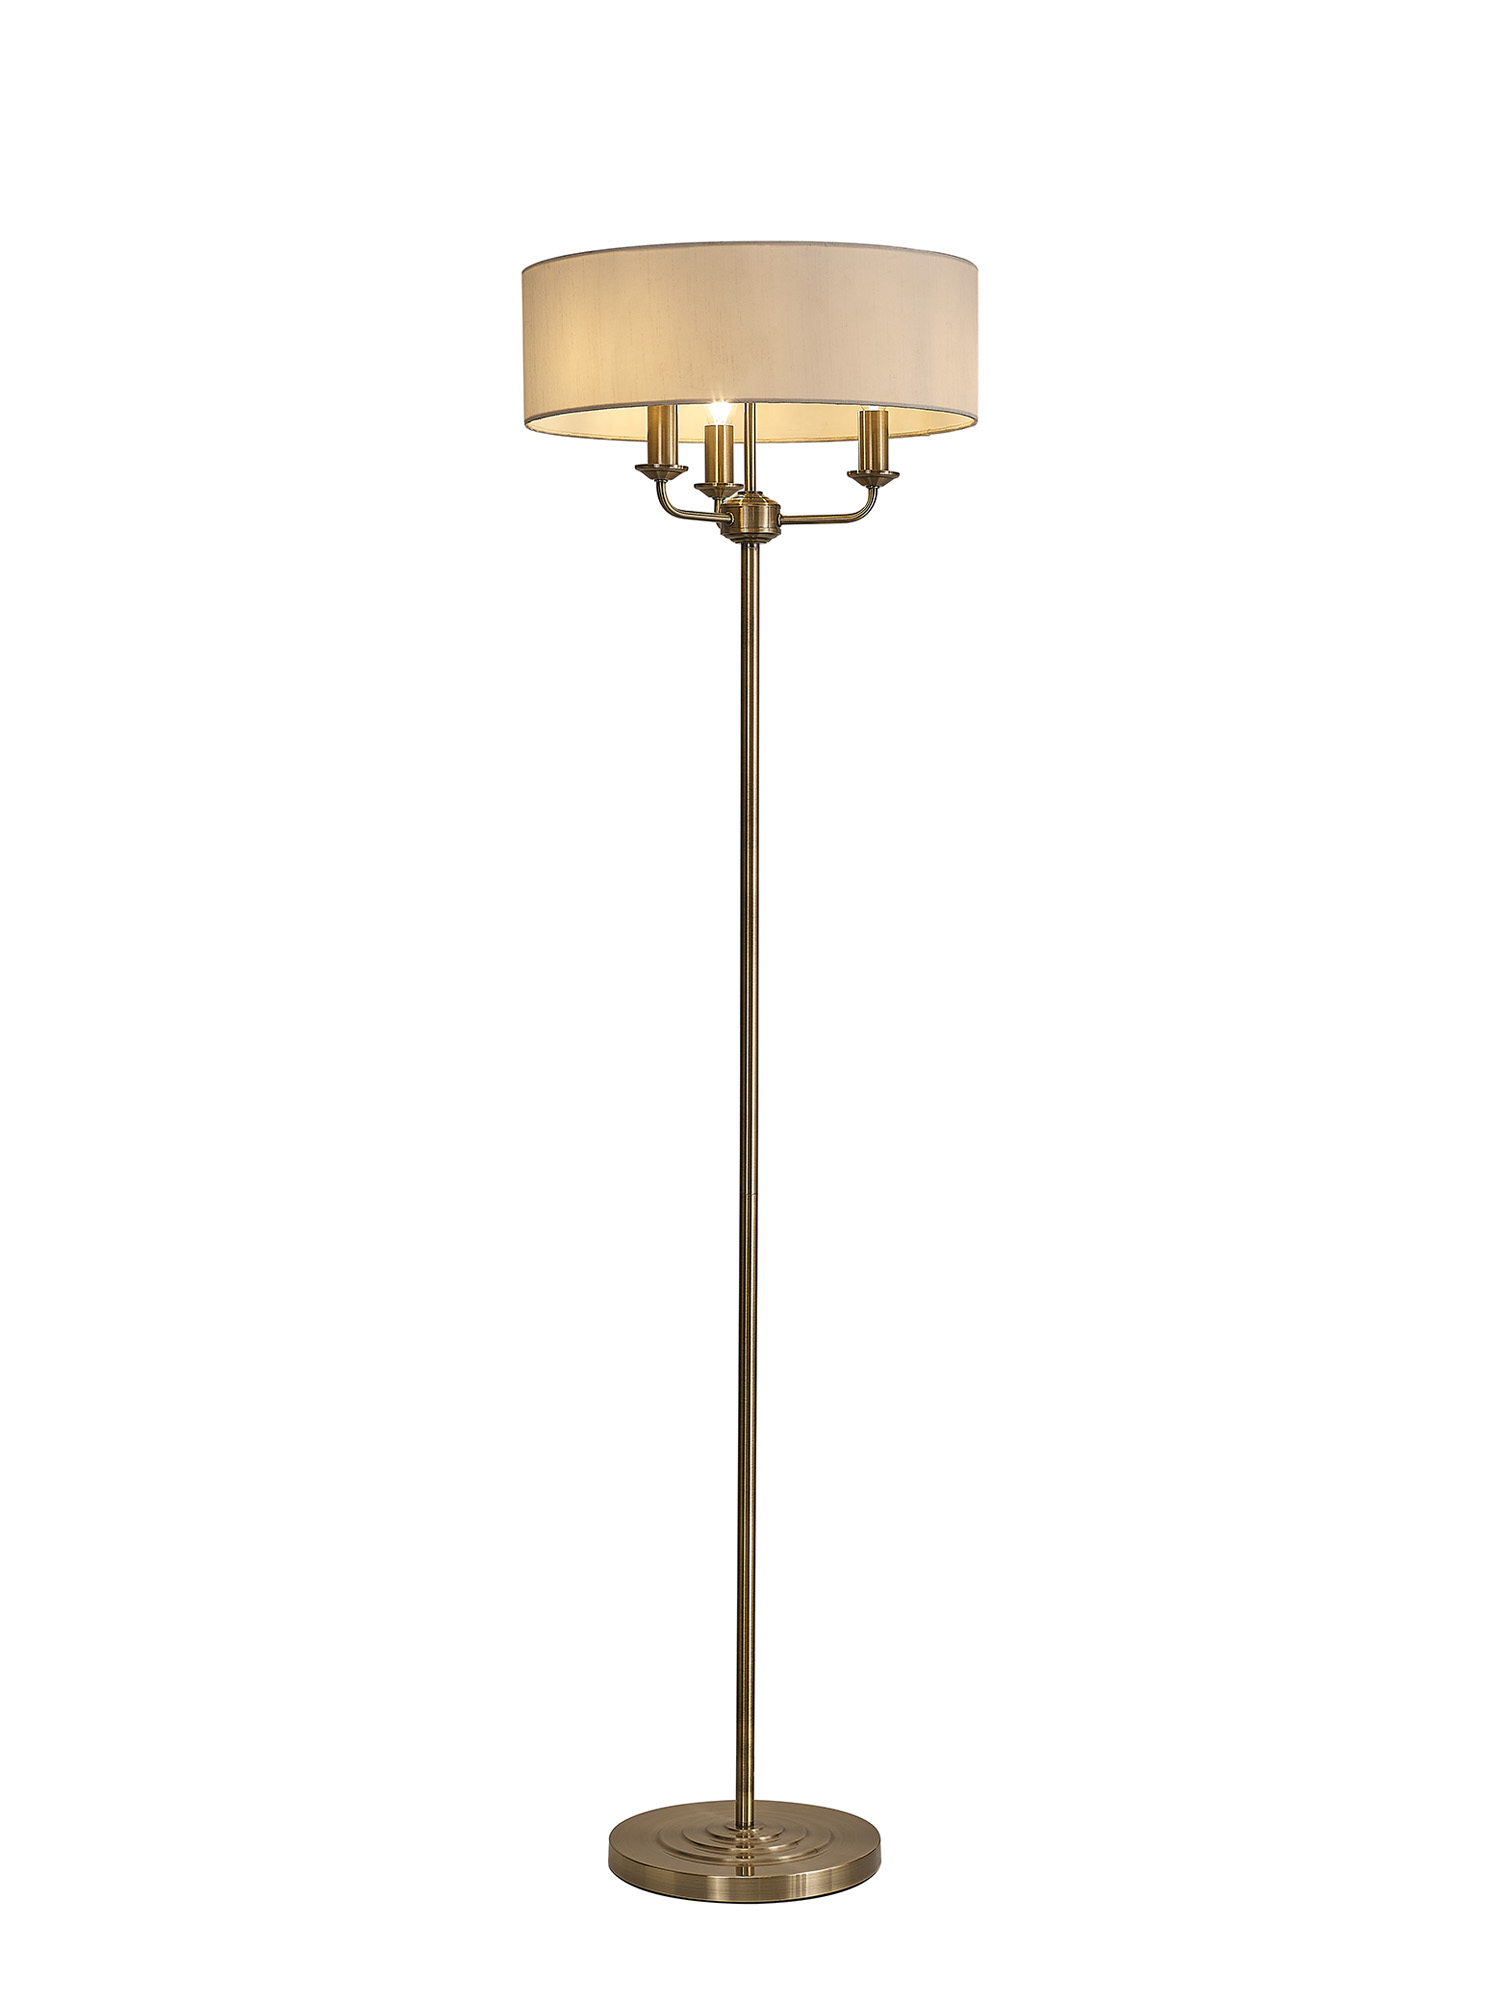 DK0901  Banyan 45cm 3 Light Floor Lamp Antique Brass, White